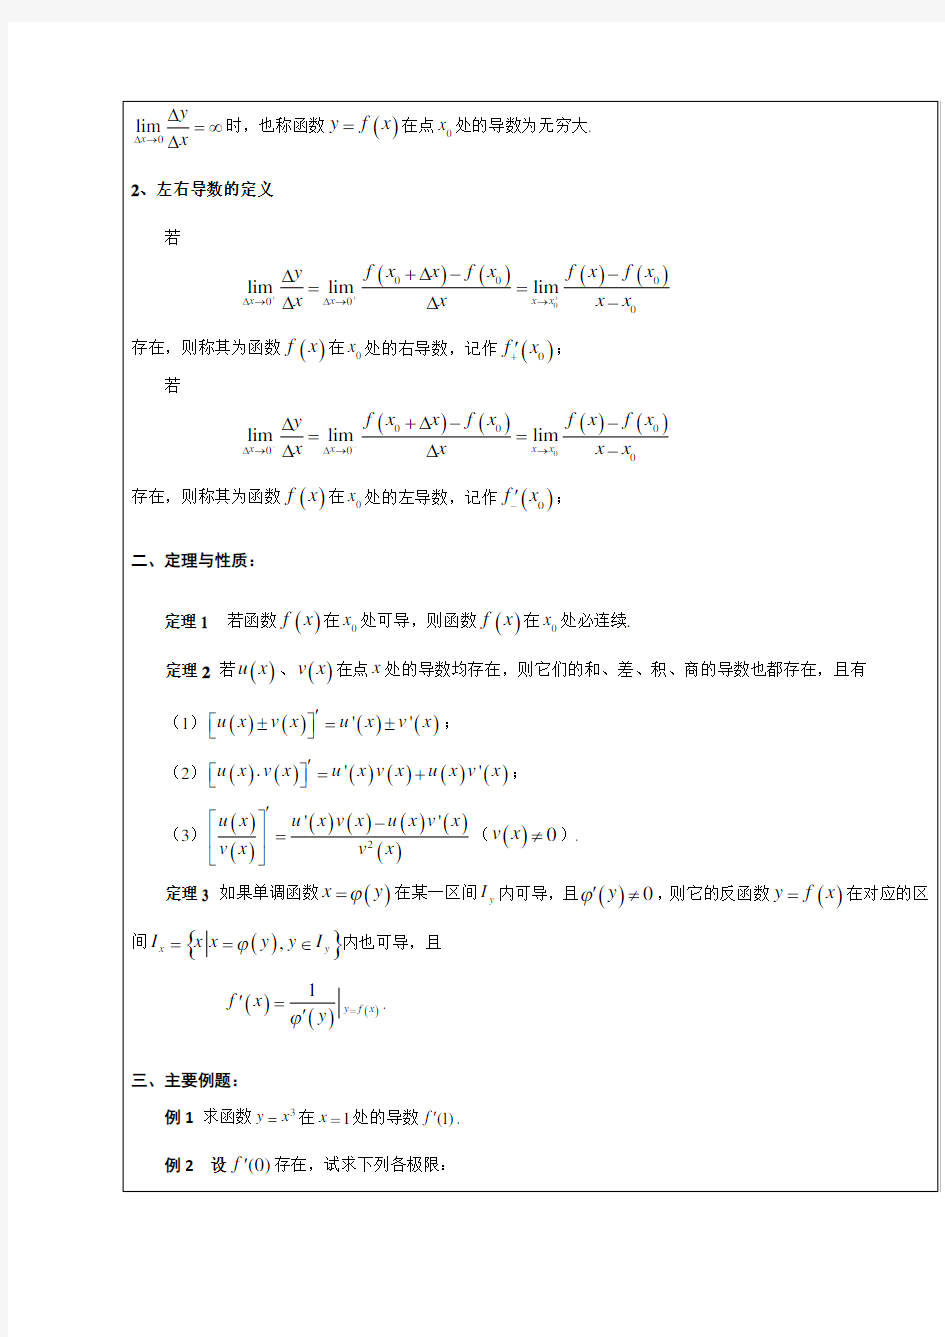 同济大学高等数学教案第二章一元函数微分学及其应用